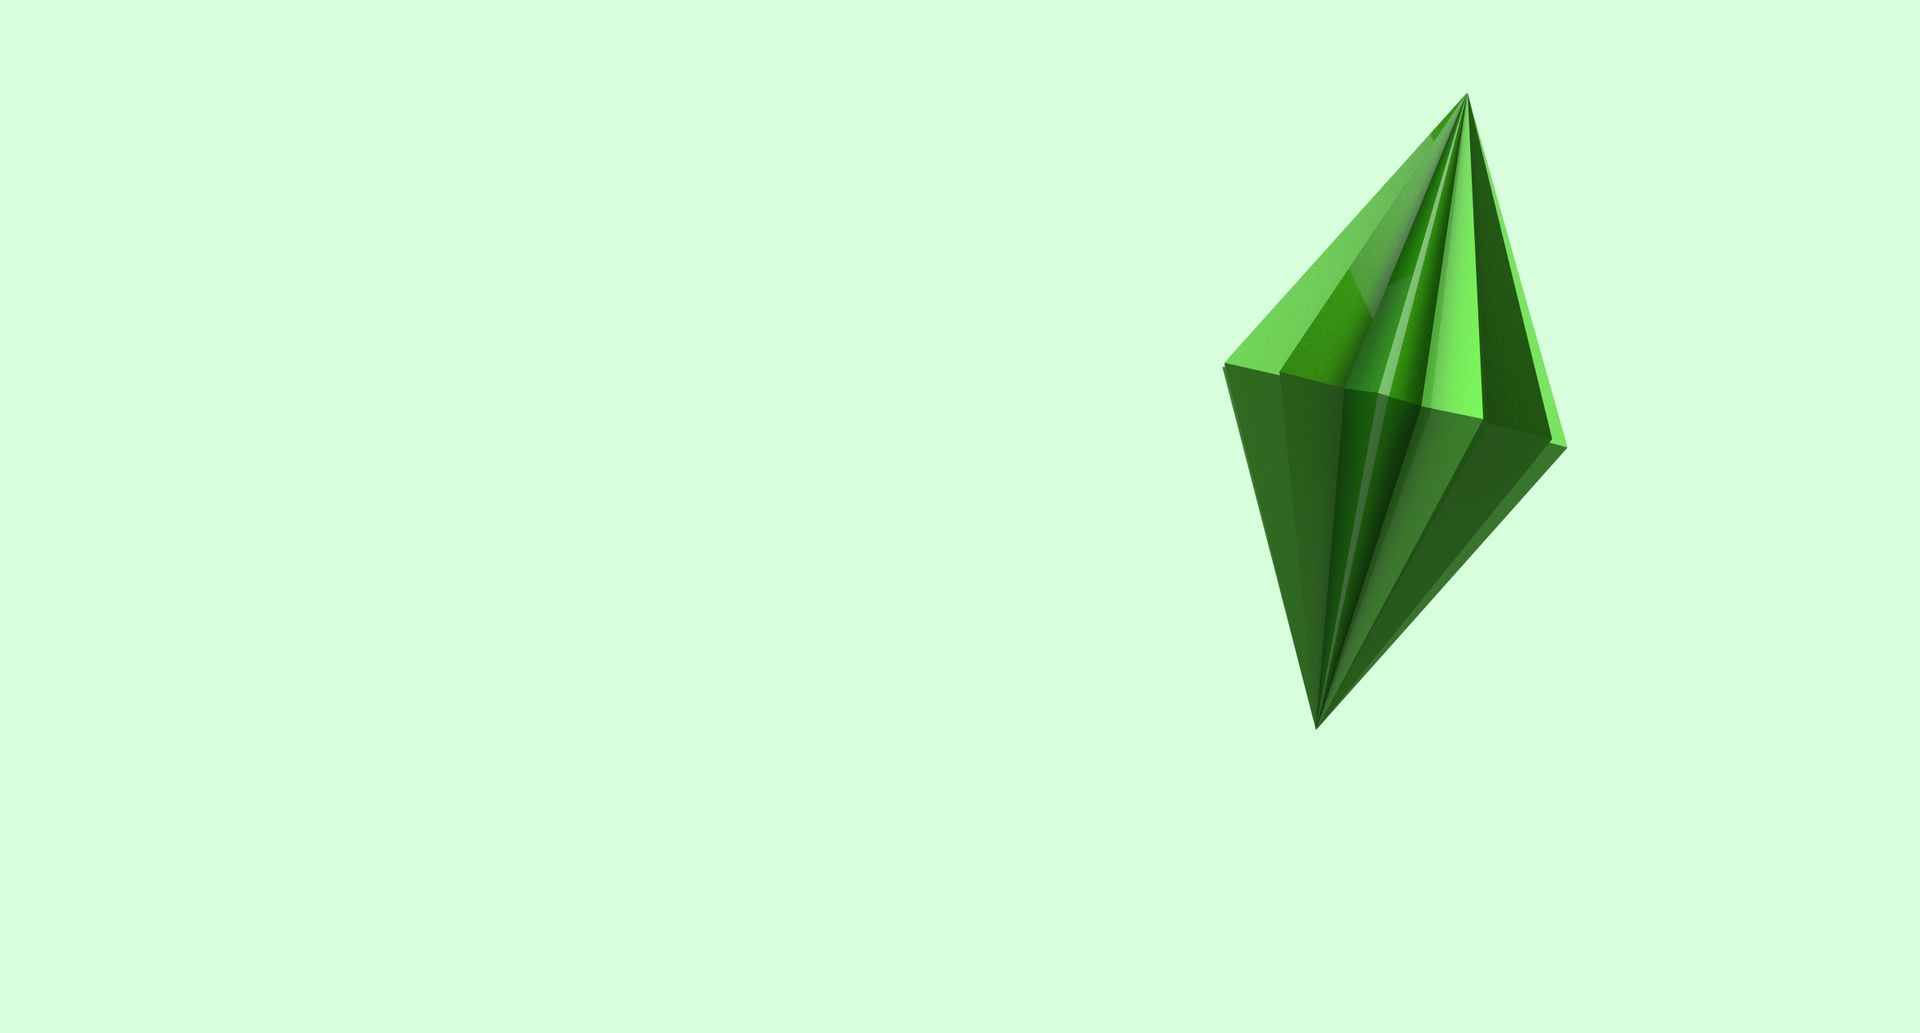 En smaragd-grønn, animert type diamant står på skrå på en grønn bakgrunn. 